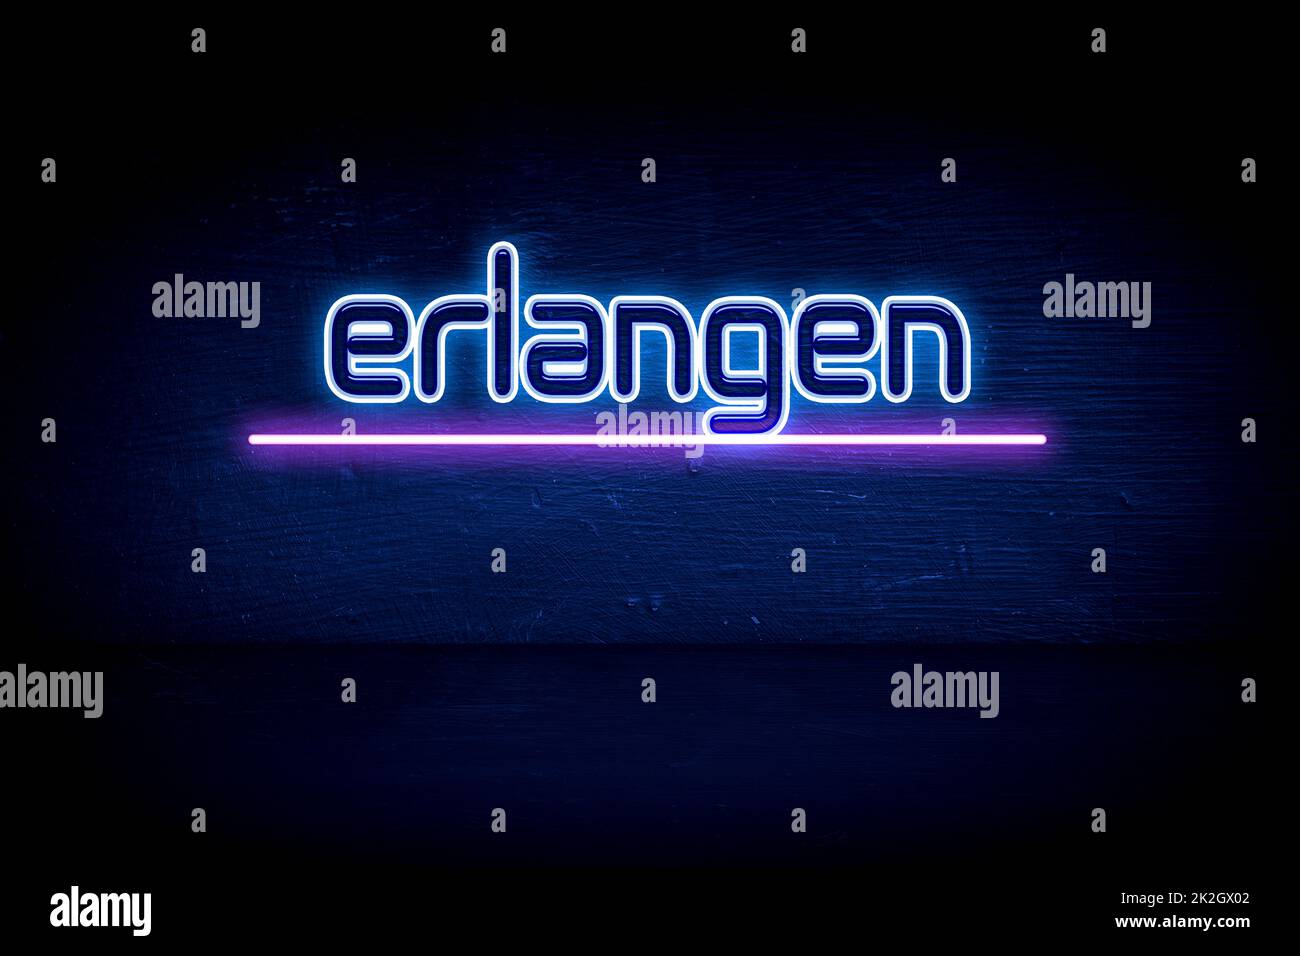 Erlangen - panneau d'annonce au néon bleu Banque D'Images